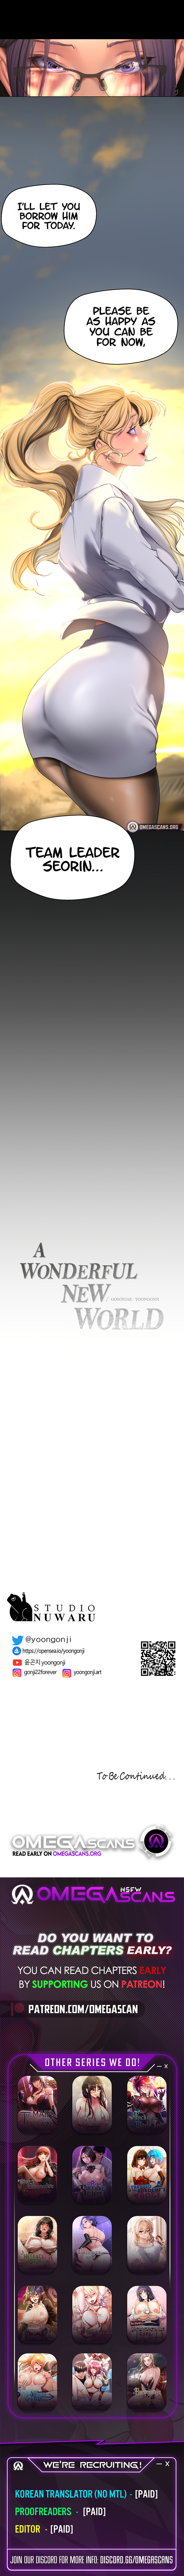 The image A Wonderful New World - Chapter 202 - 10edd2b3e49036b62a - ManhwaManga.io